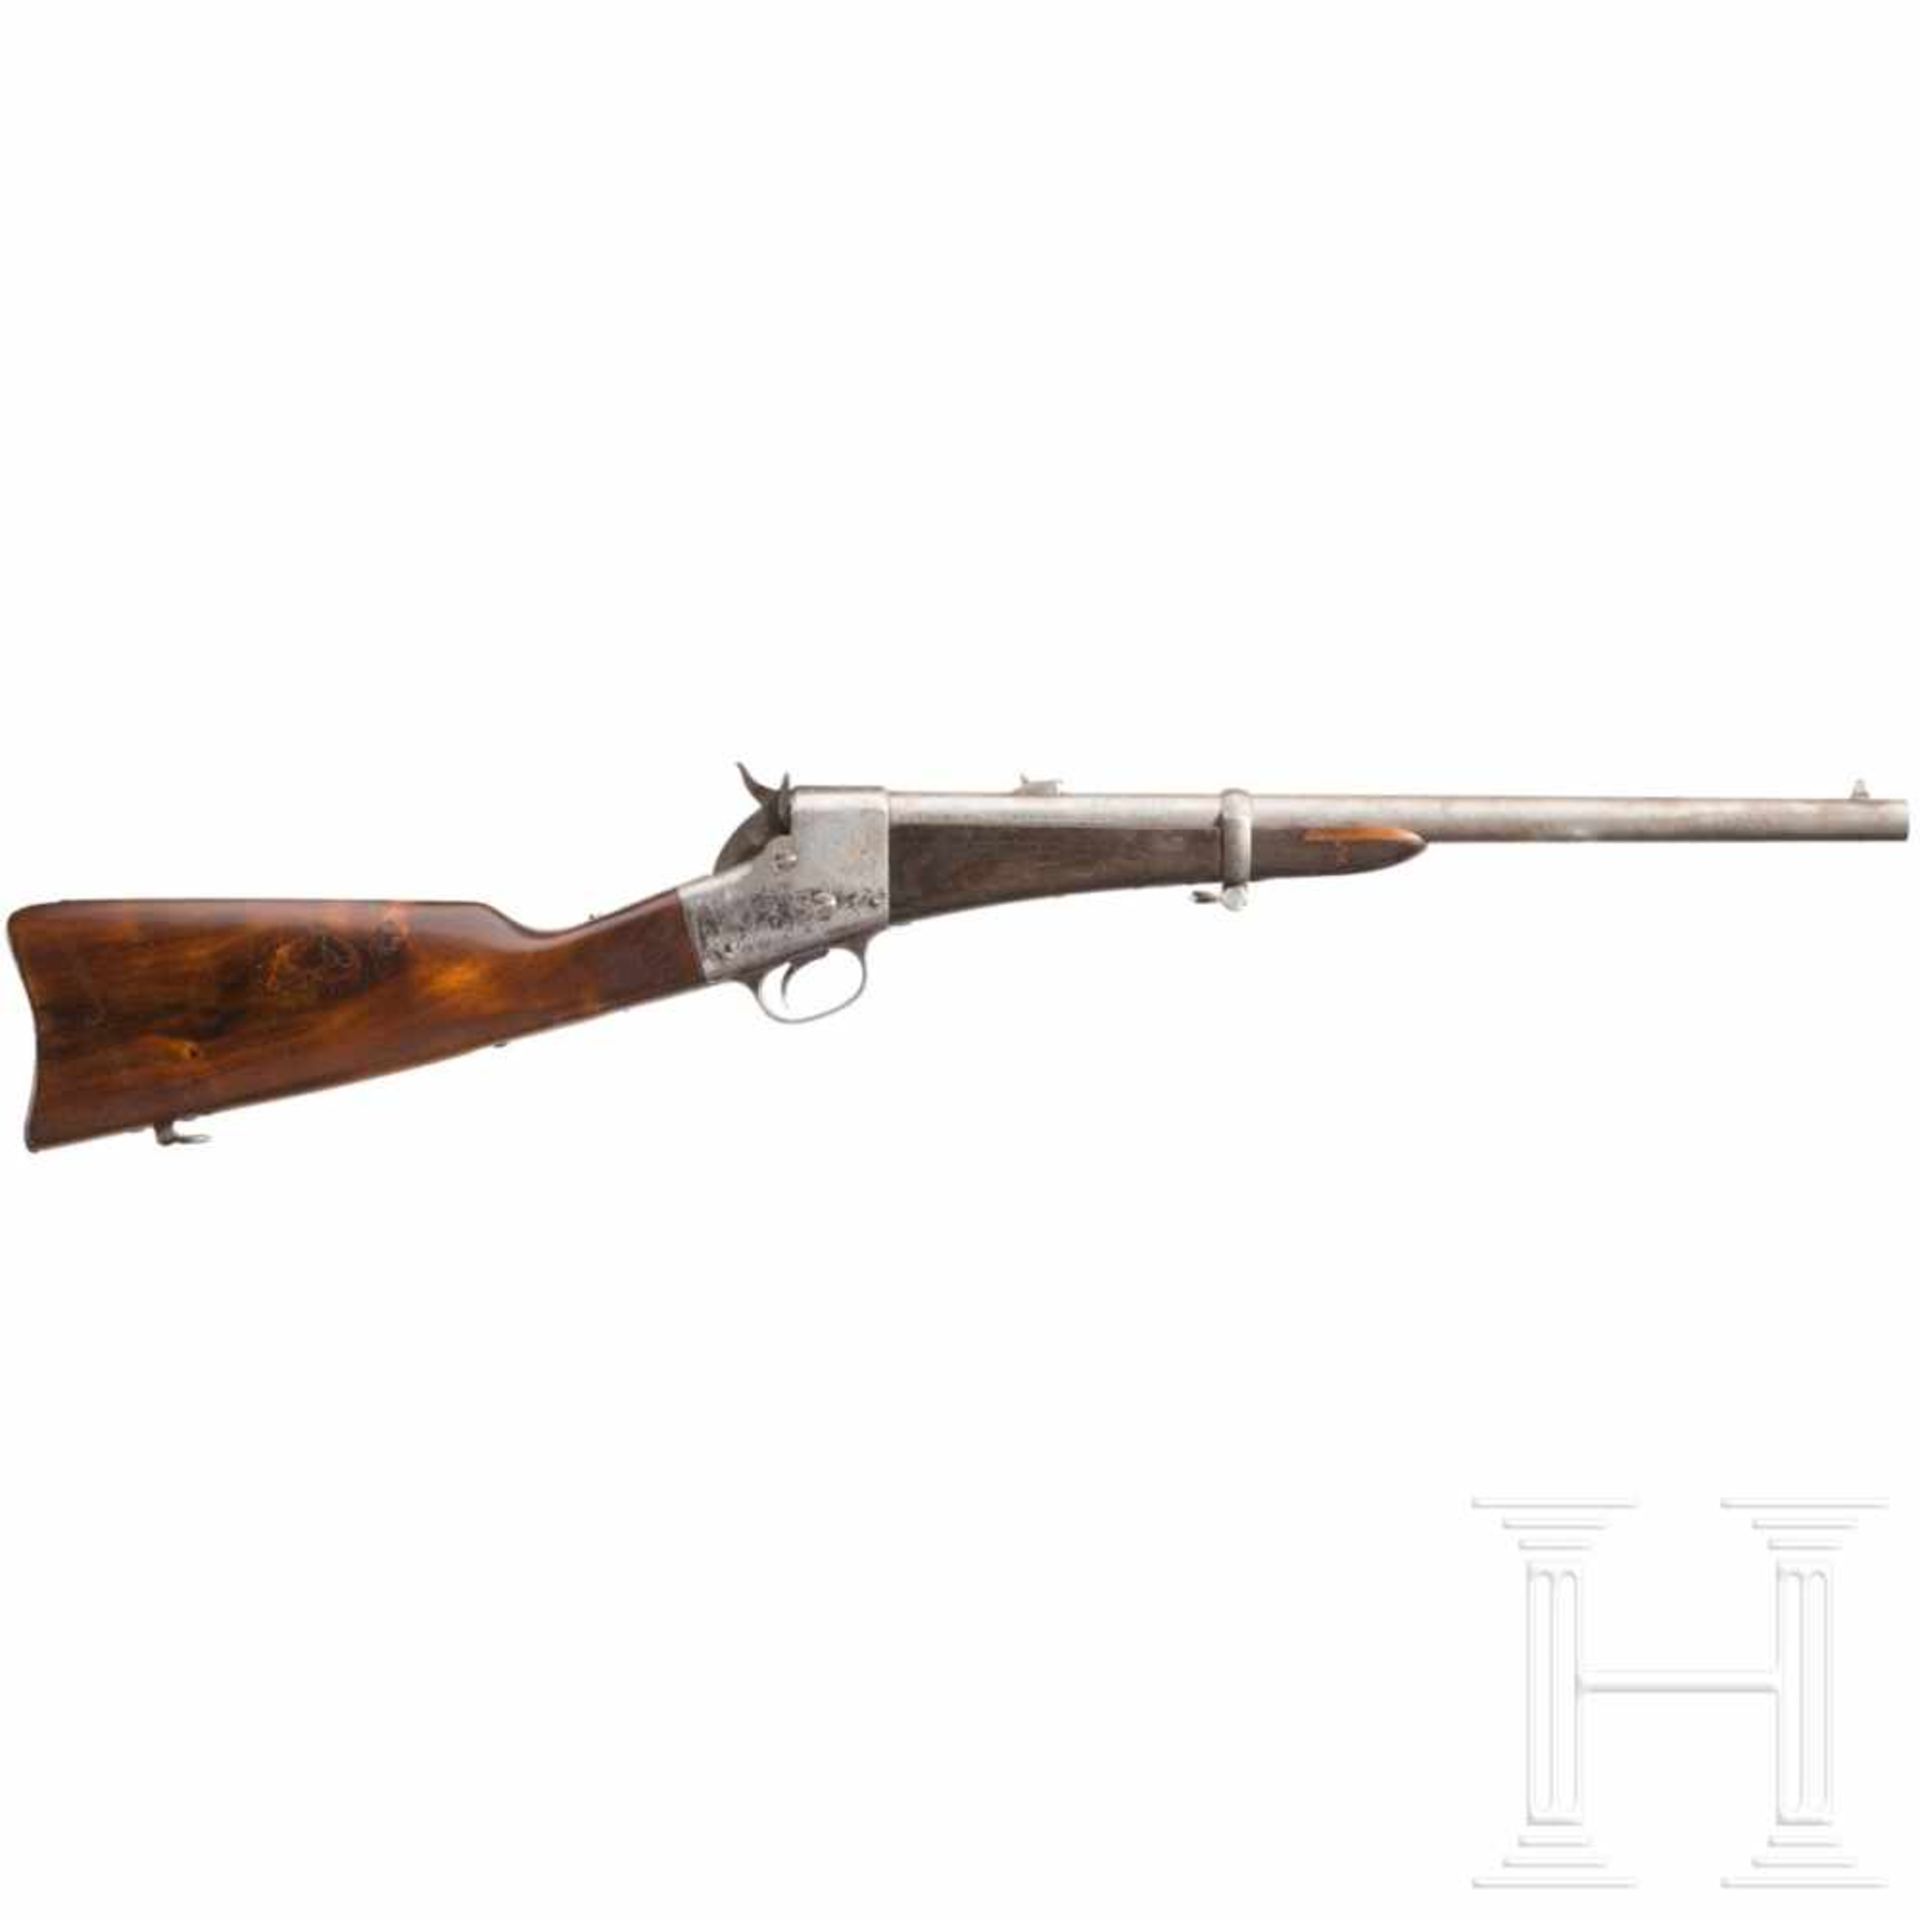 Remington Split Breech CarbineKal. .46, ohne Nr. Lauf partiell rau, Länge 20". Standvisier mit einer